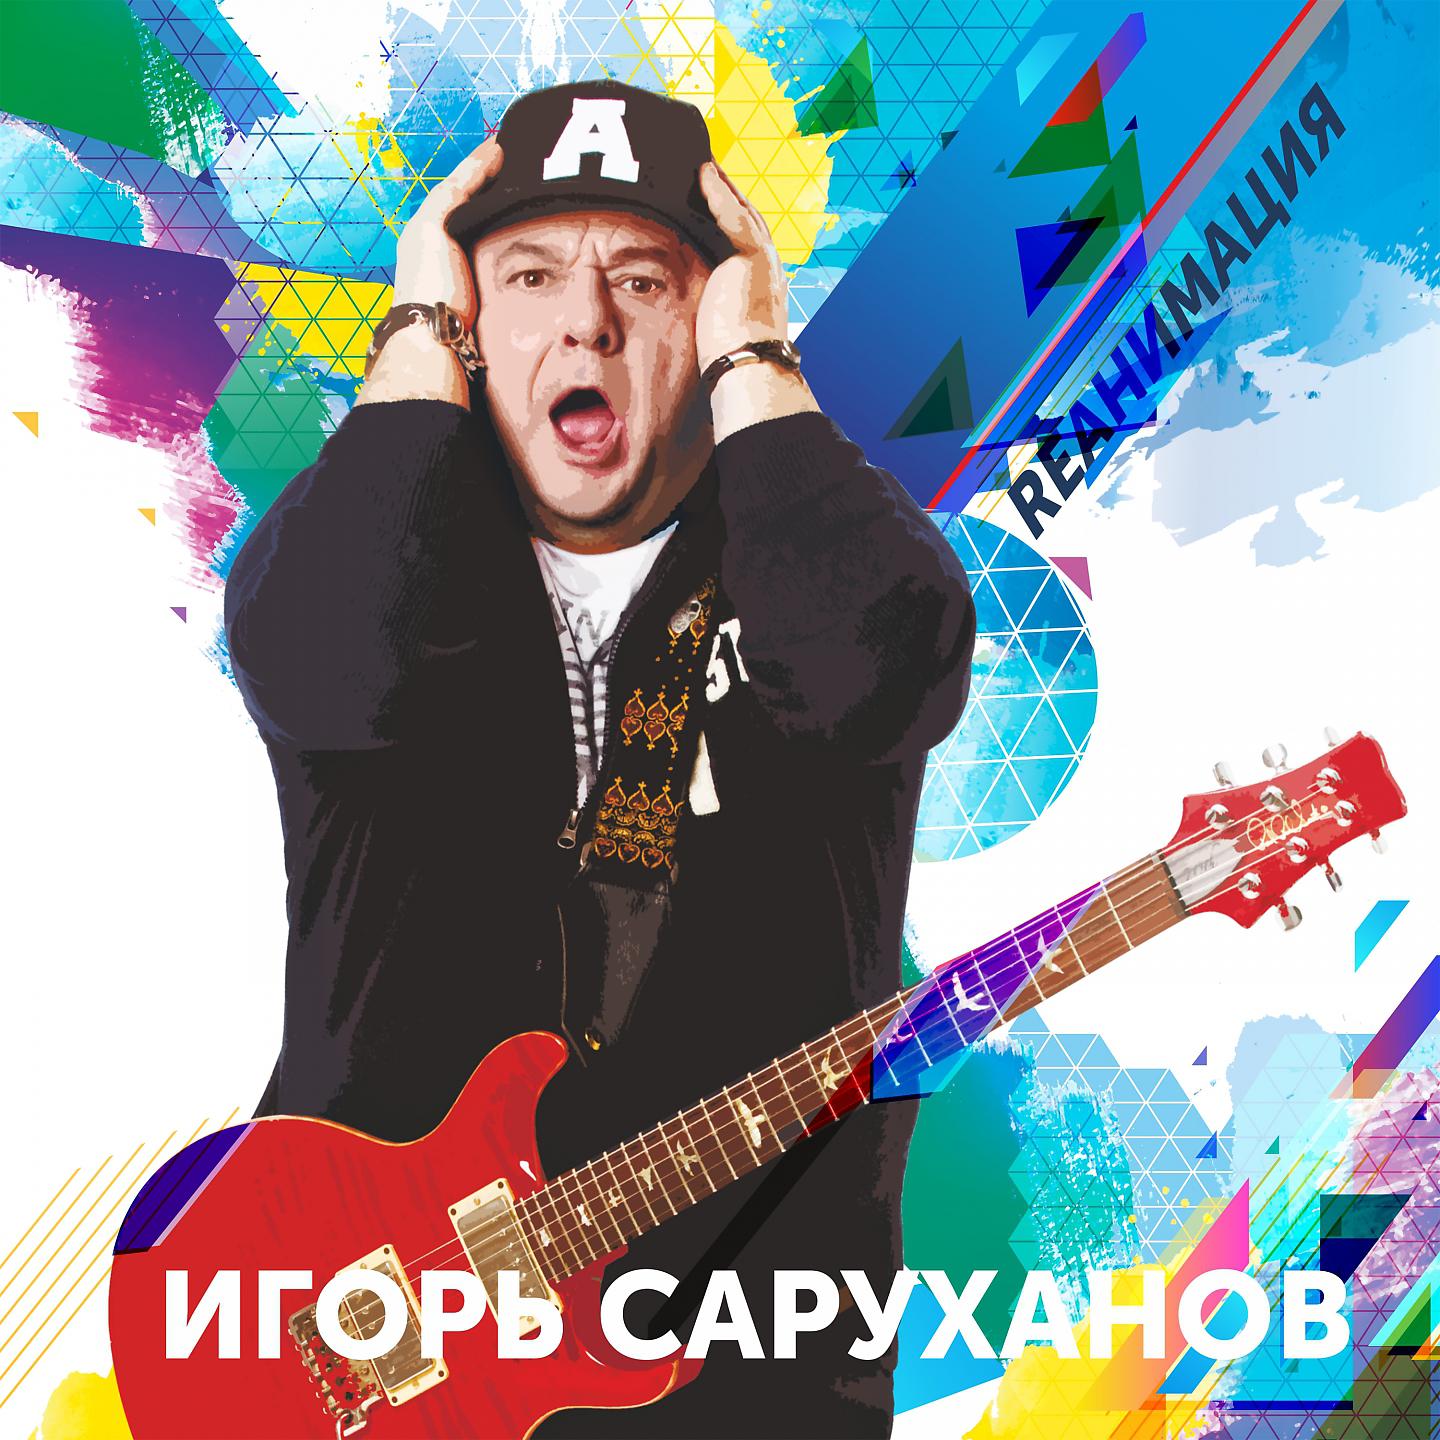 Игорь Саруханов - Парень с гитарой (Dance version 2018)